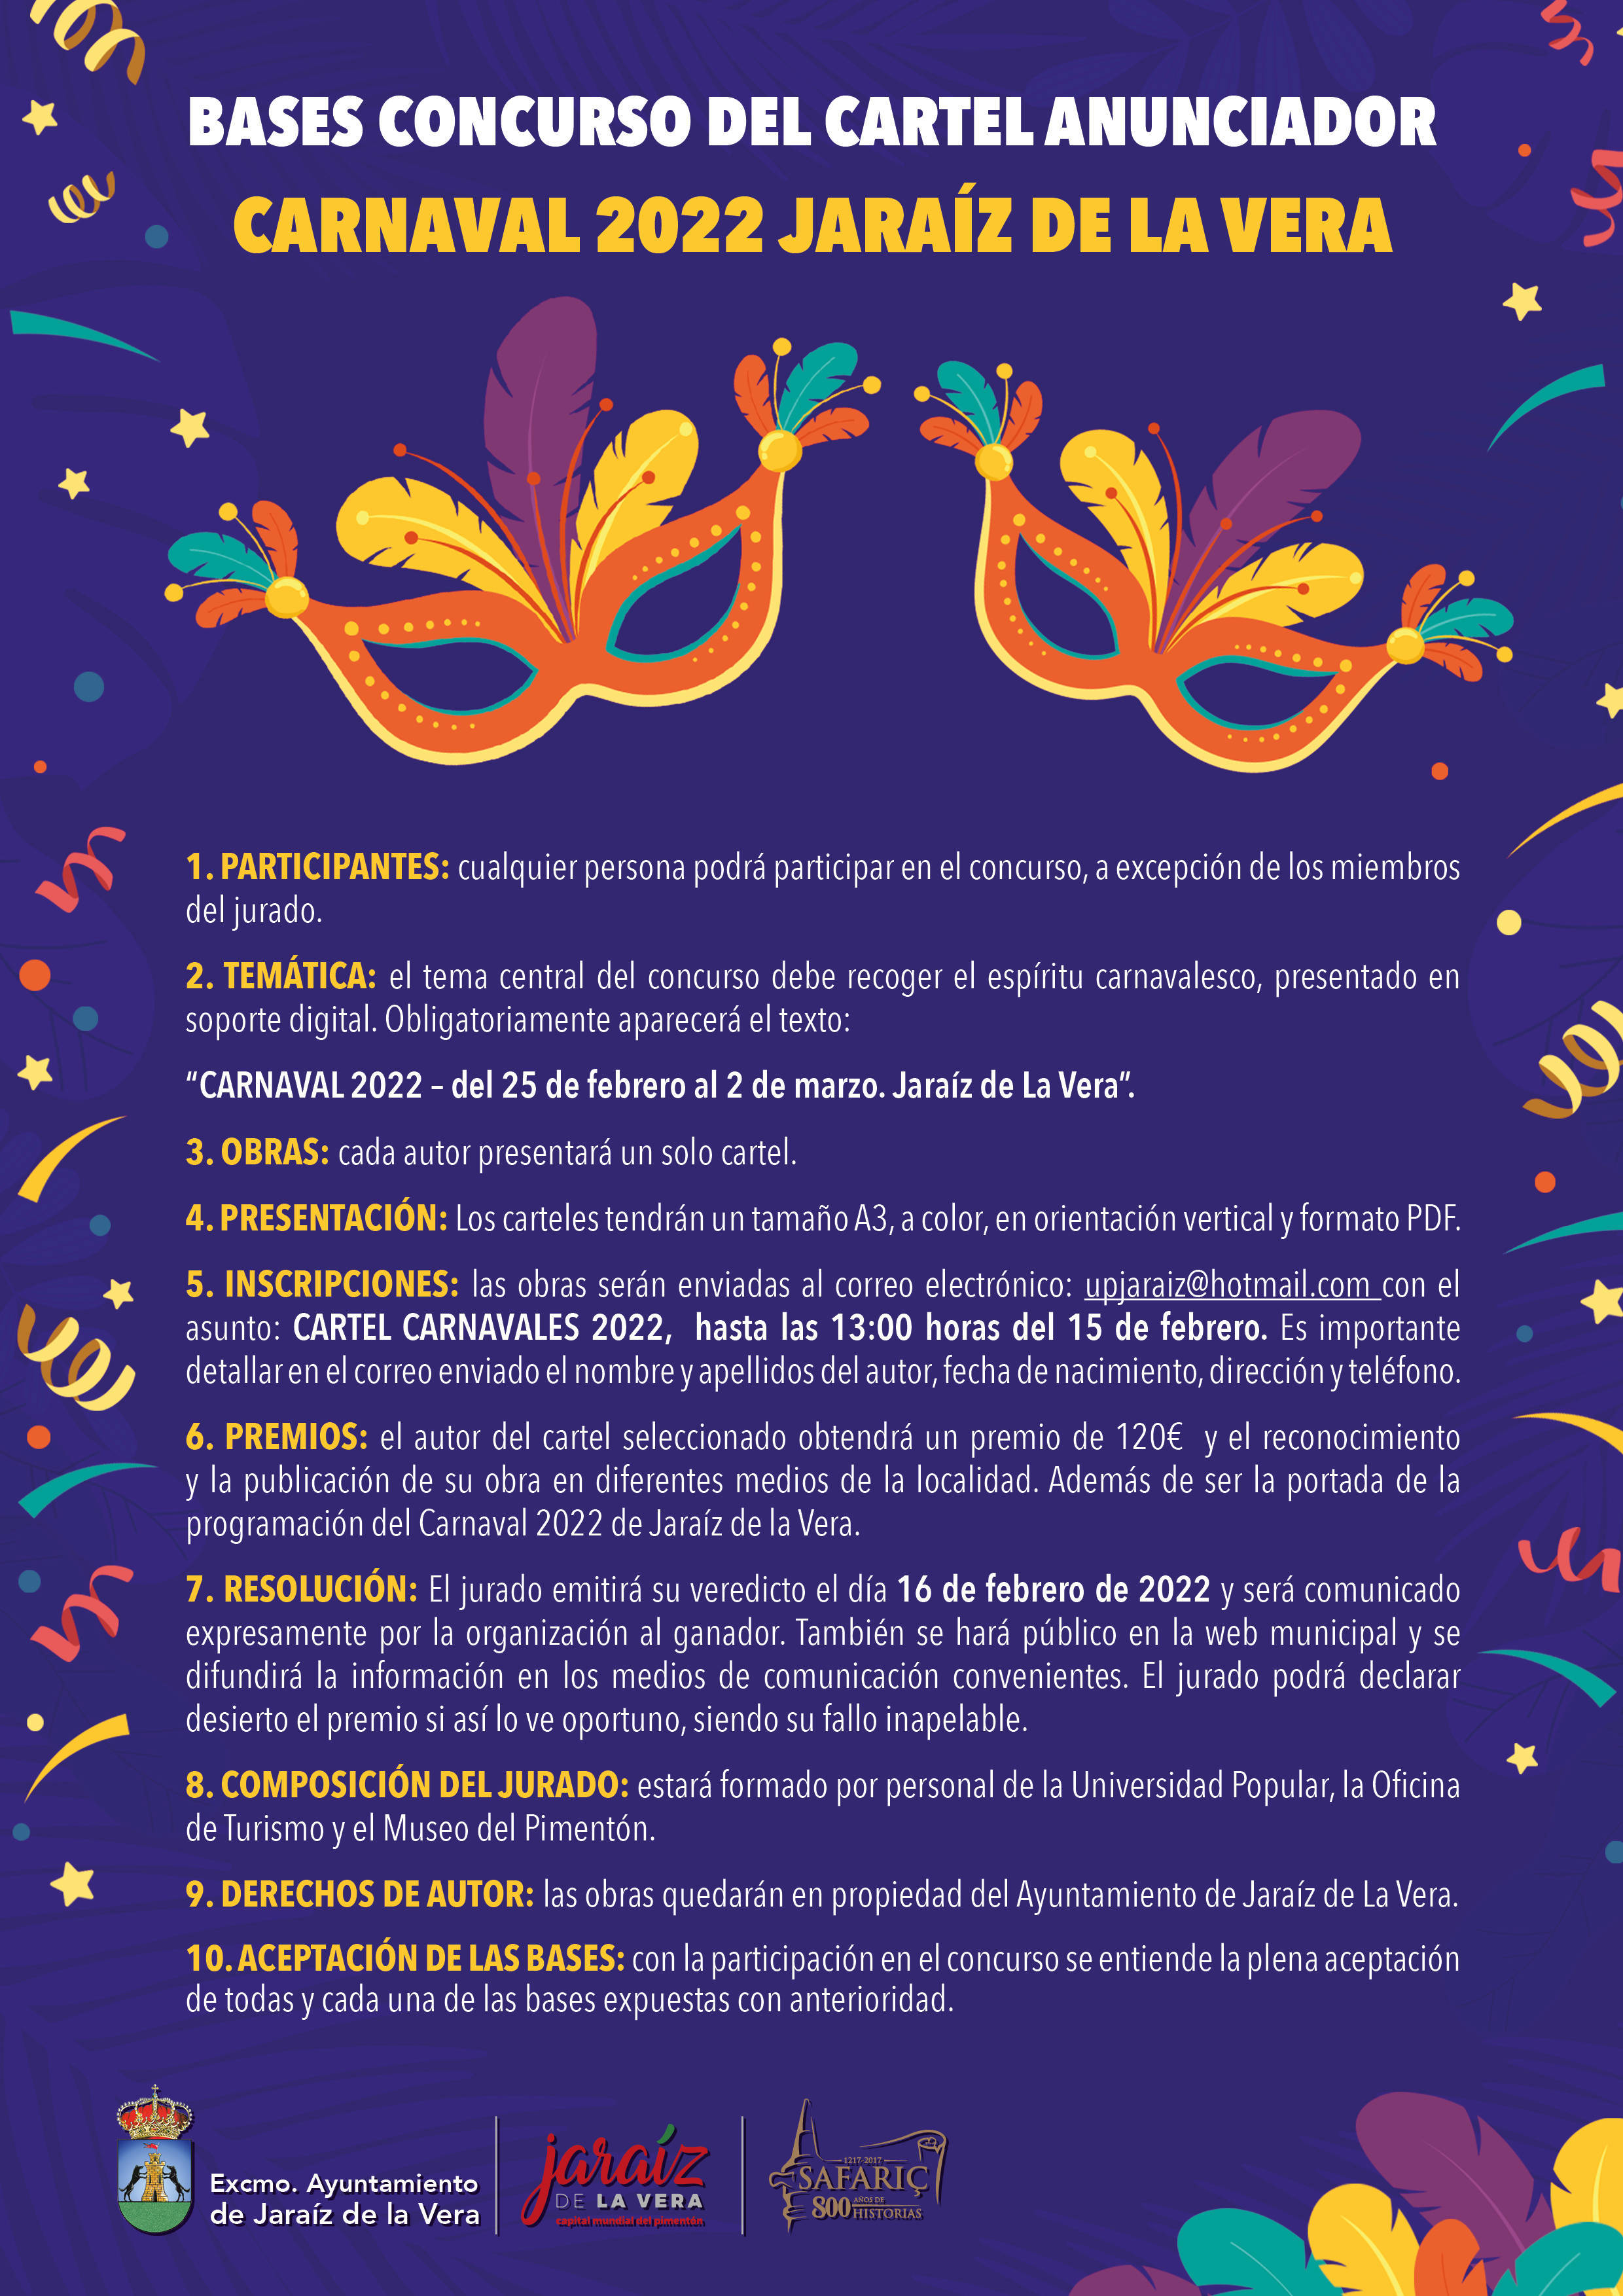 Concurso del cartel anunciador del Carnaval (2022) - Jaraíz de la Vera (Cáceres)